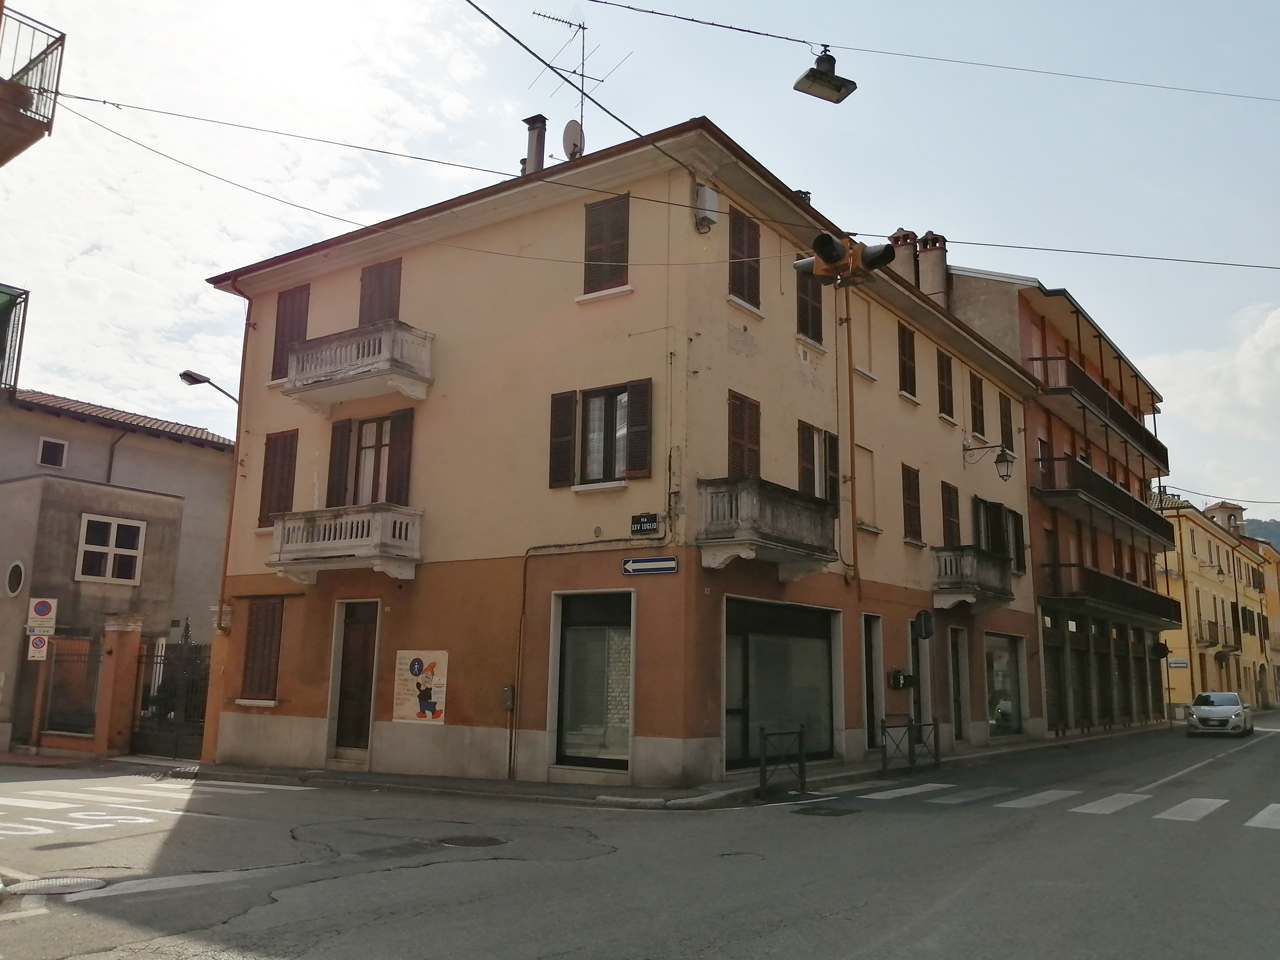 Casa privata in Via Novara, 72 (casa, privata) - Romagnano Sesia (NO) 